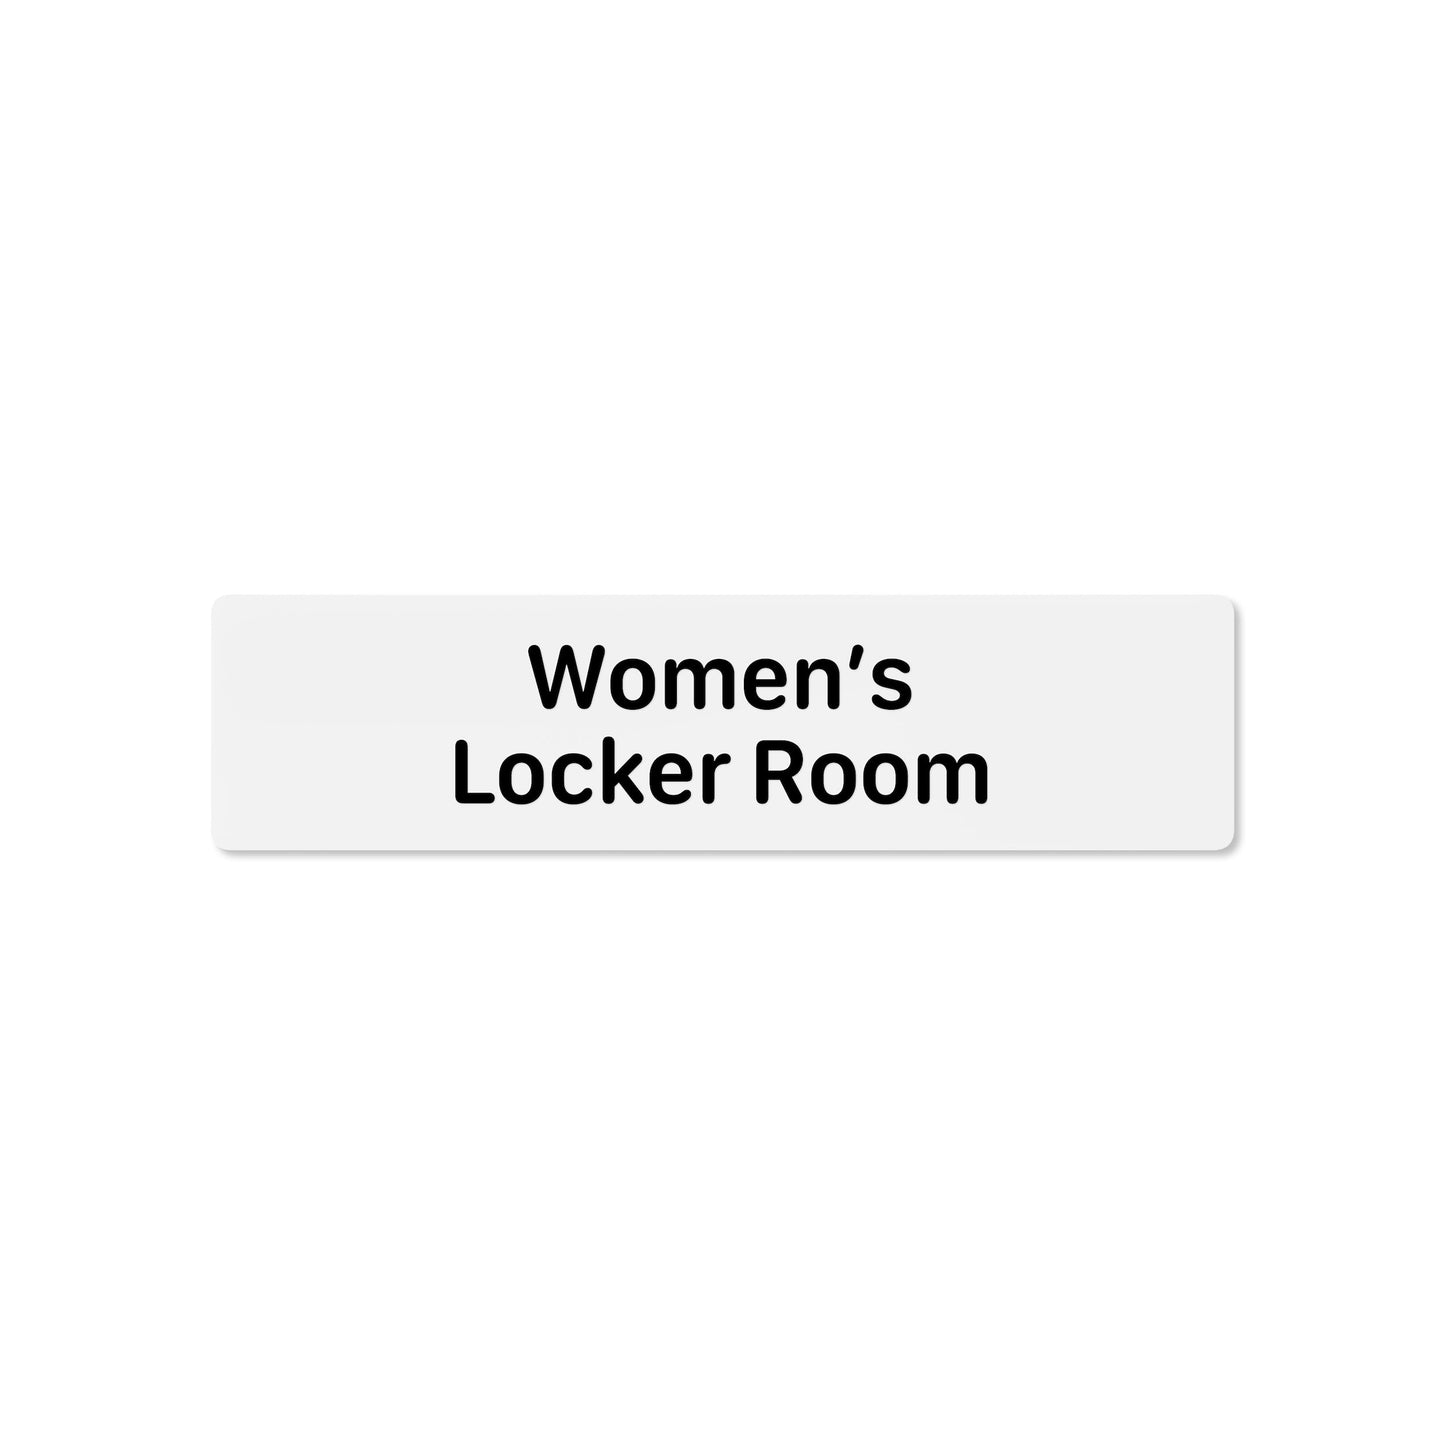 Women’s Locker Room